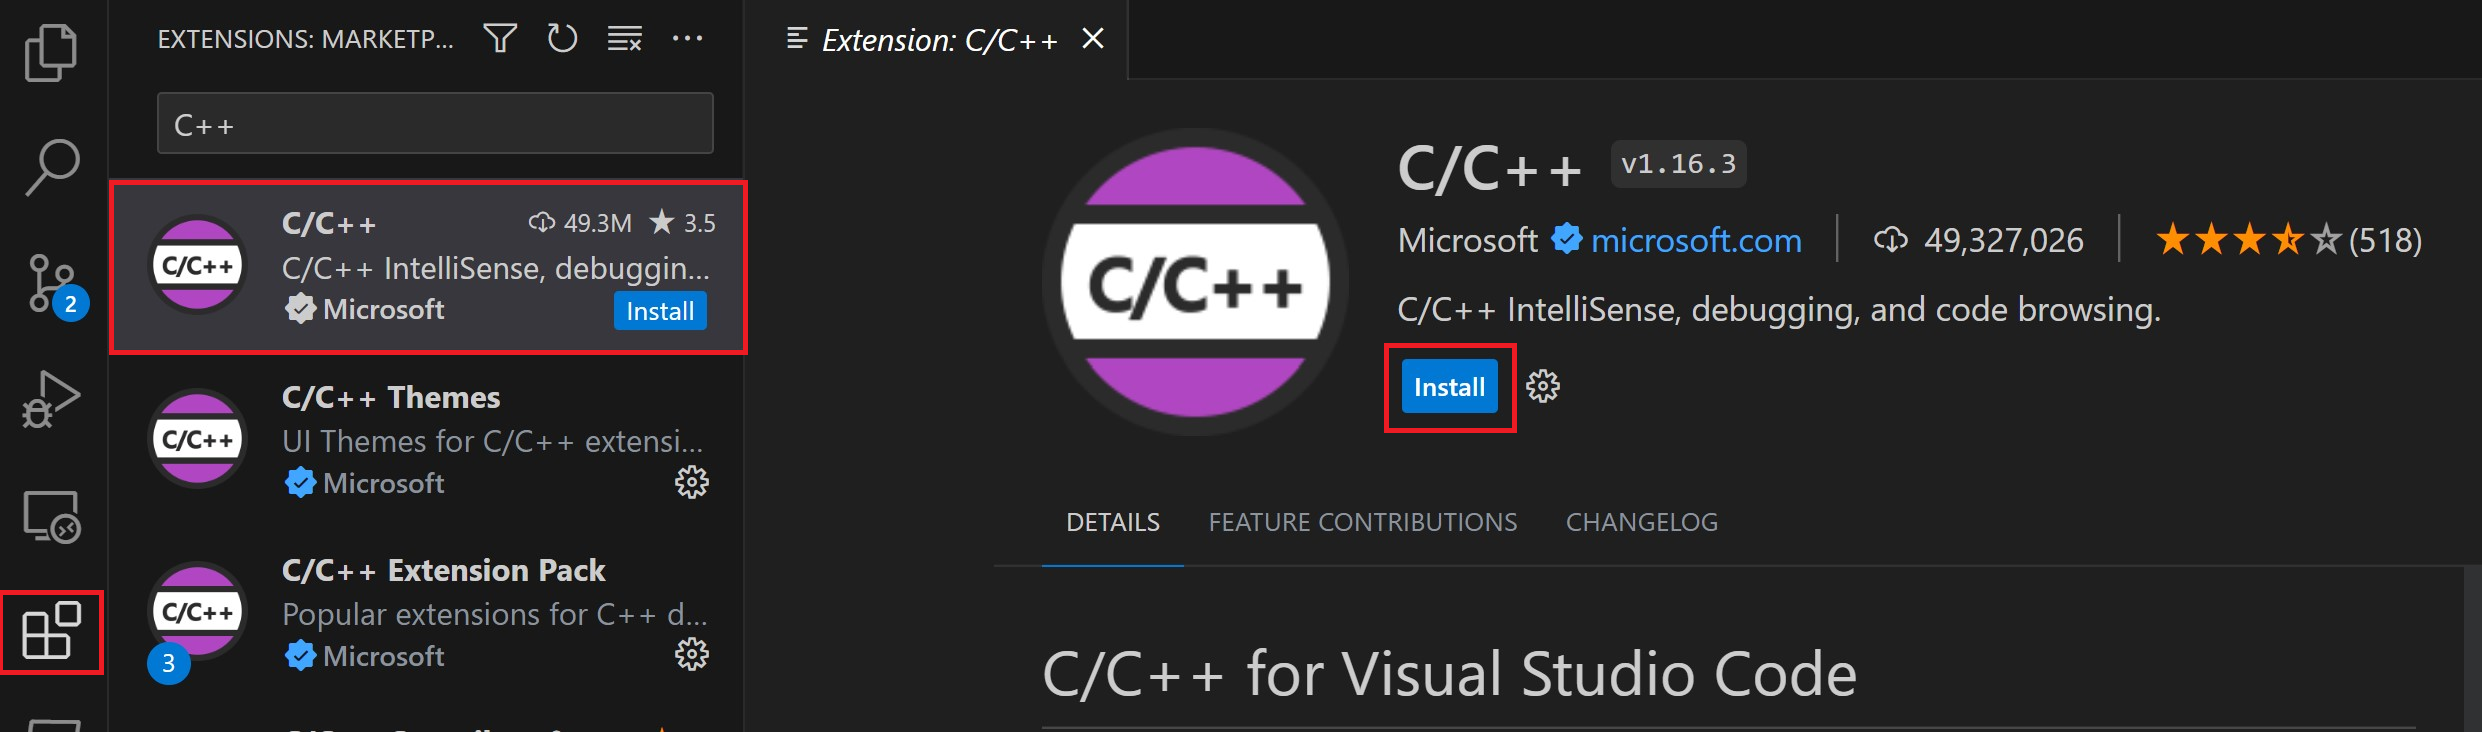 C/C++ extension